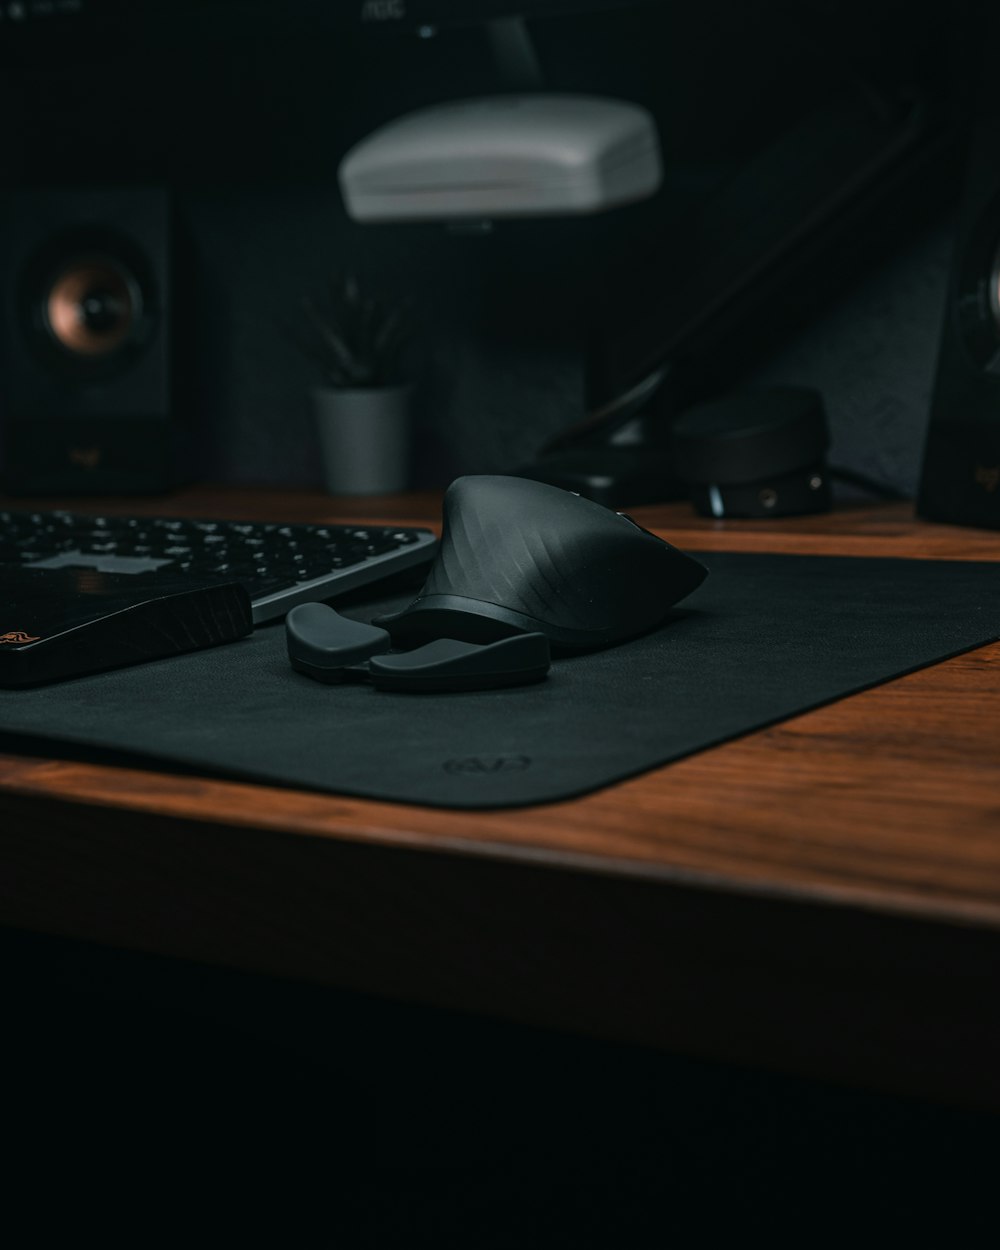 un ratón y teclado de ordenador en un escritorio